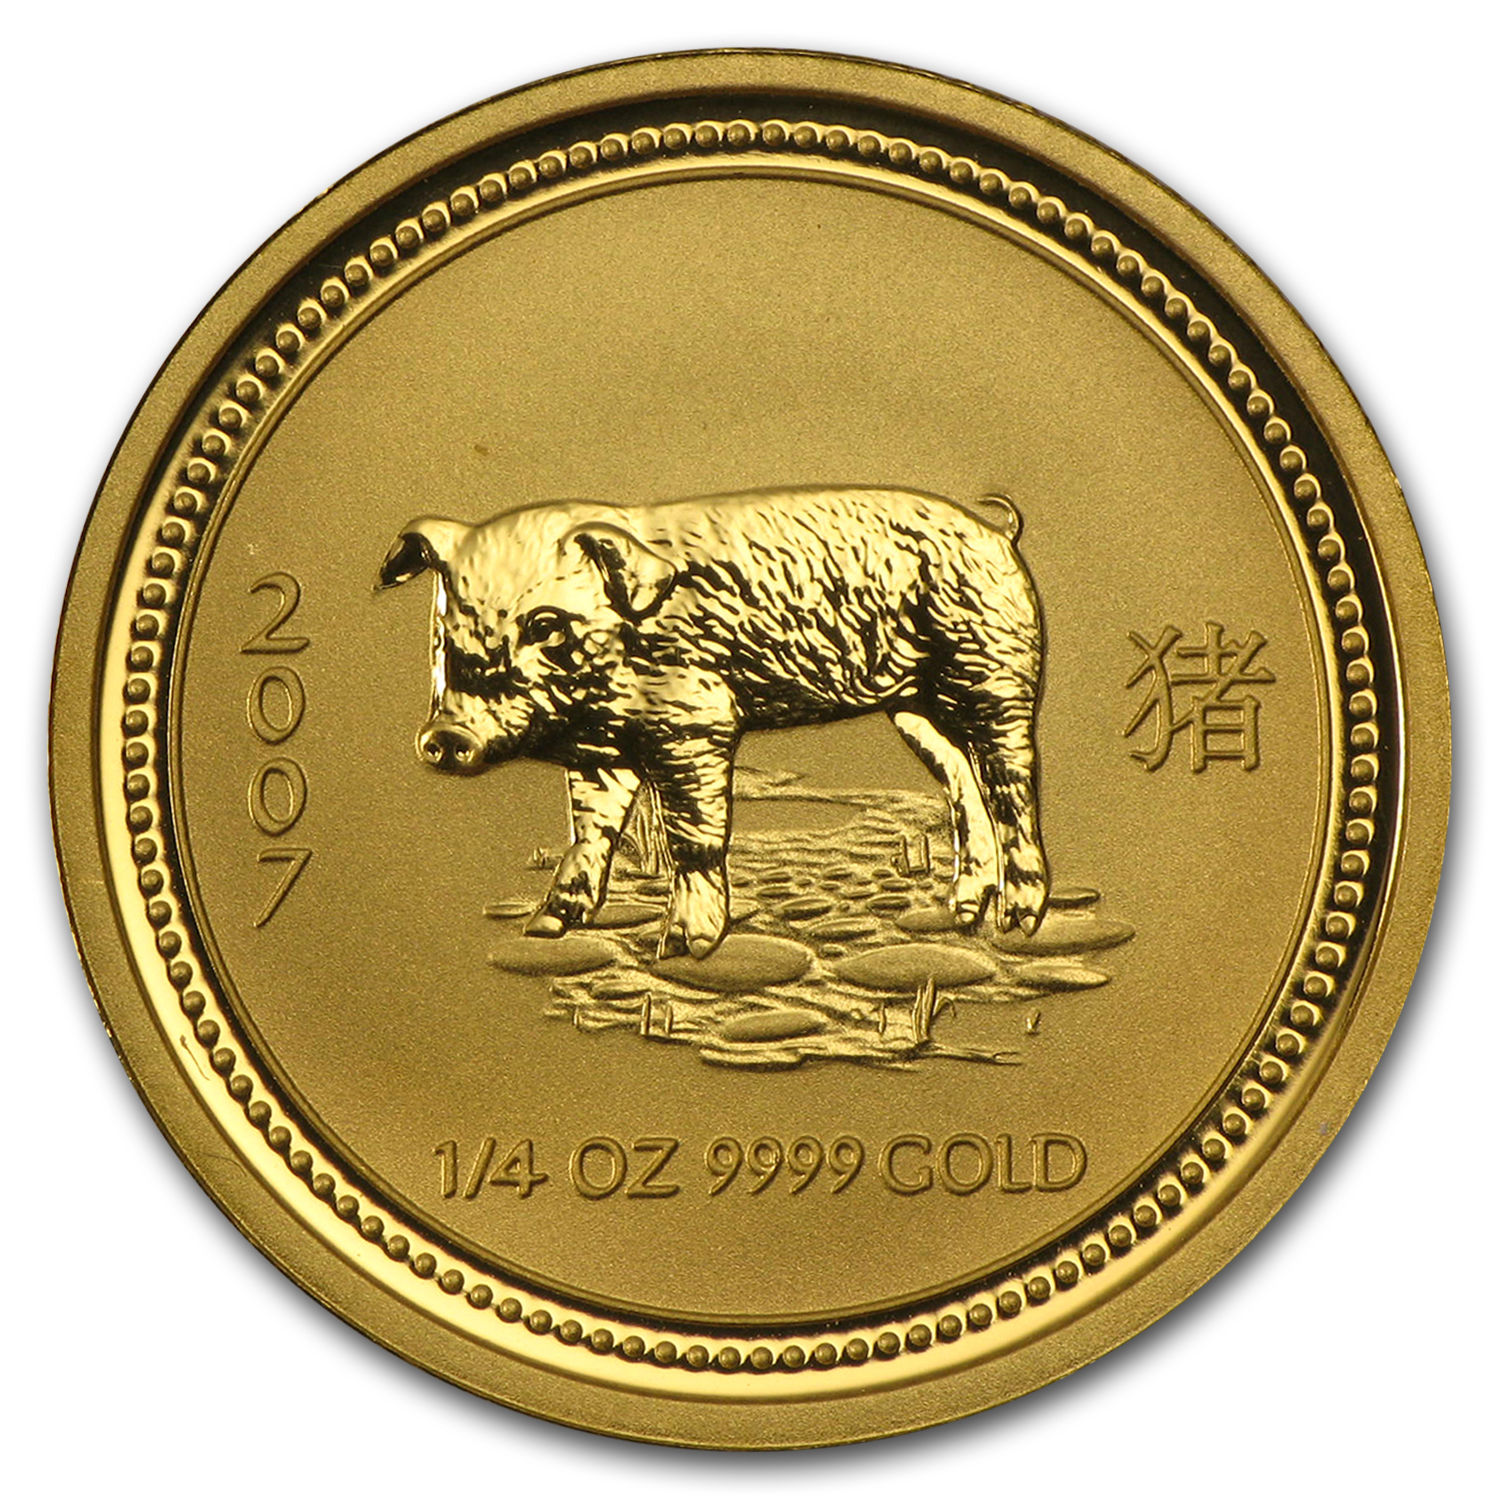 2007 Australia 1/4 oz Gold Lunar Pig BU (Series I) - SKU #18481